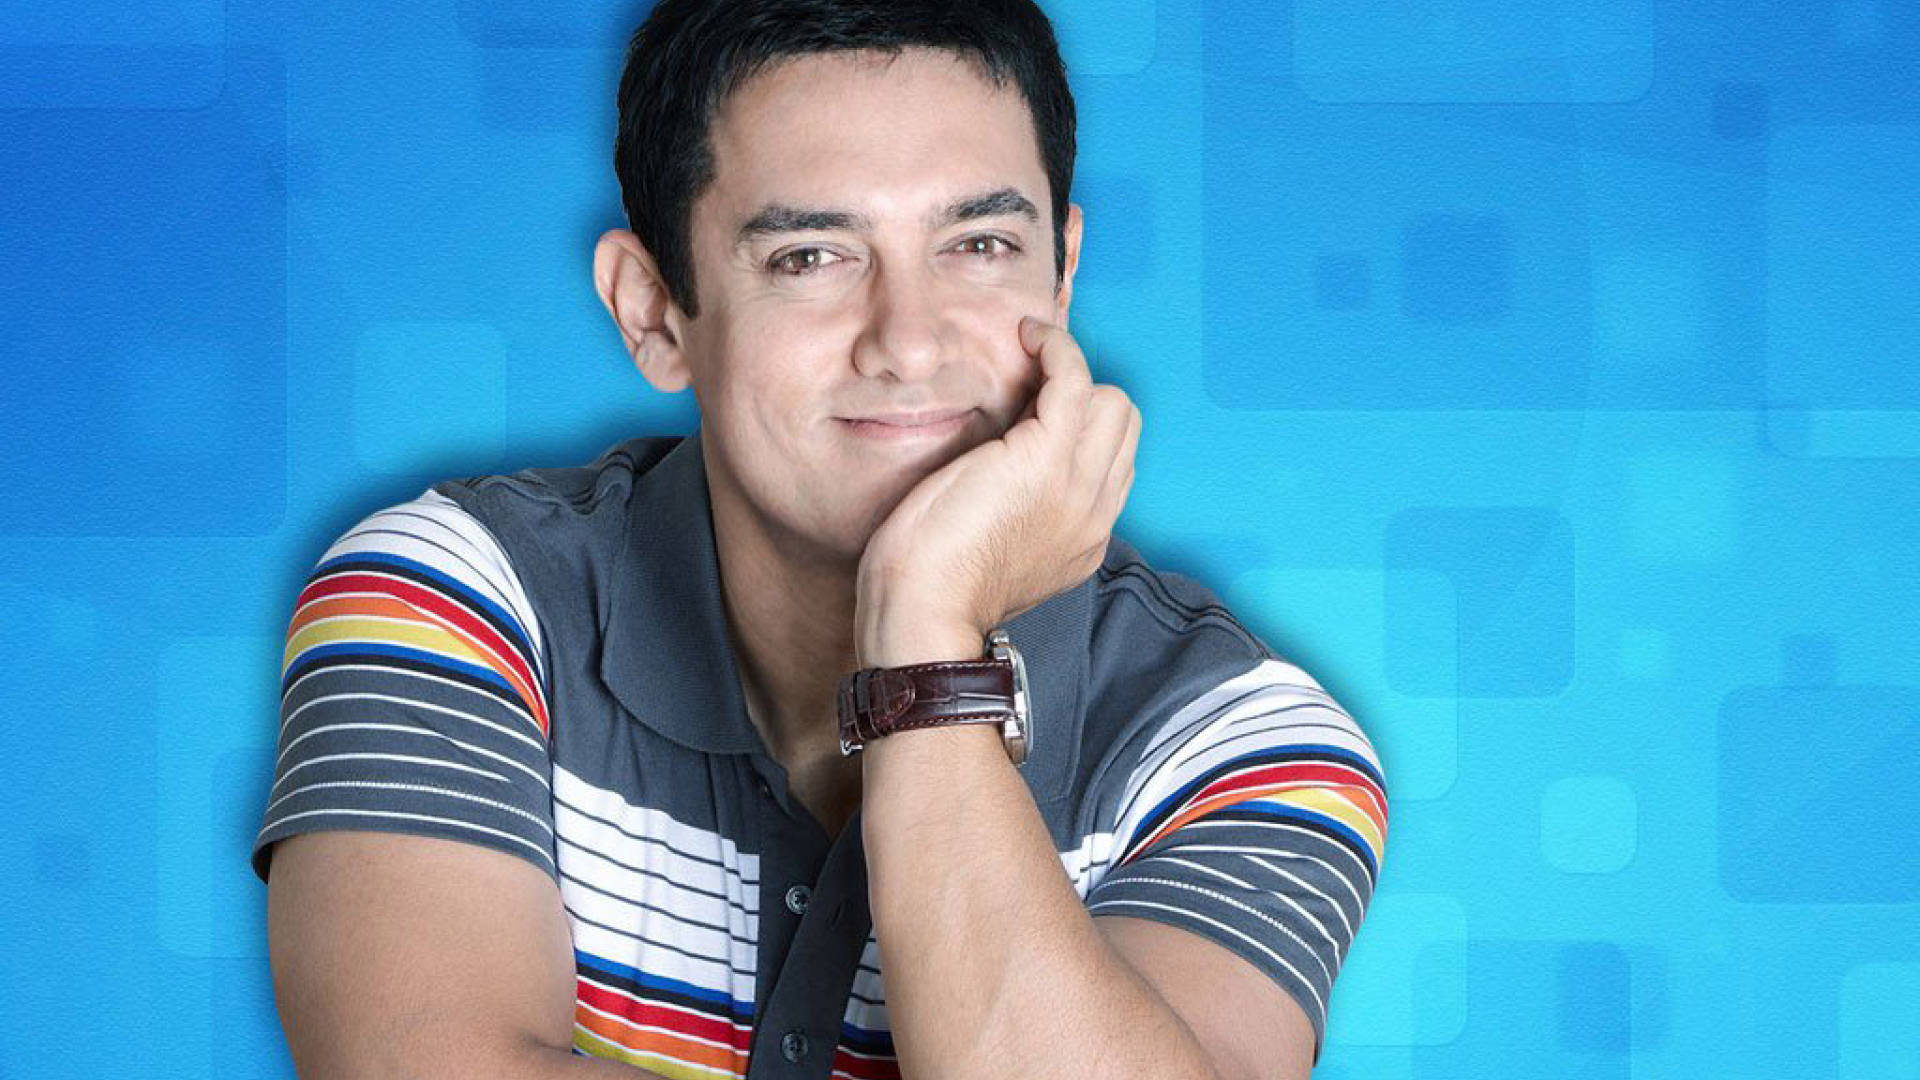 Aamir Khan Farverig Mørkegrå Skjorte Wallpaper